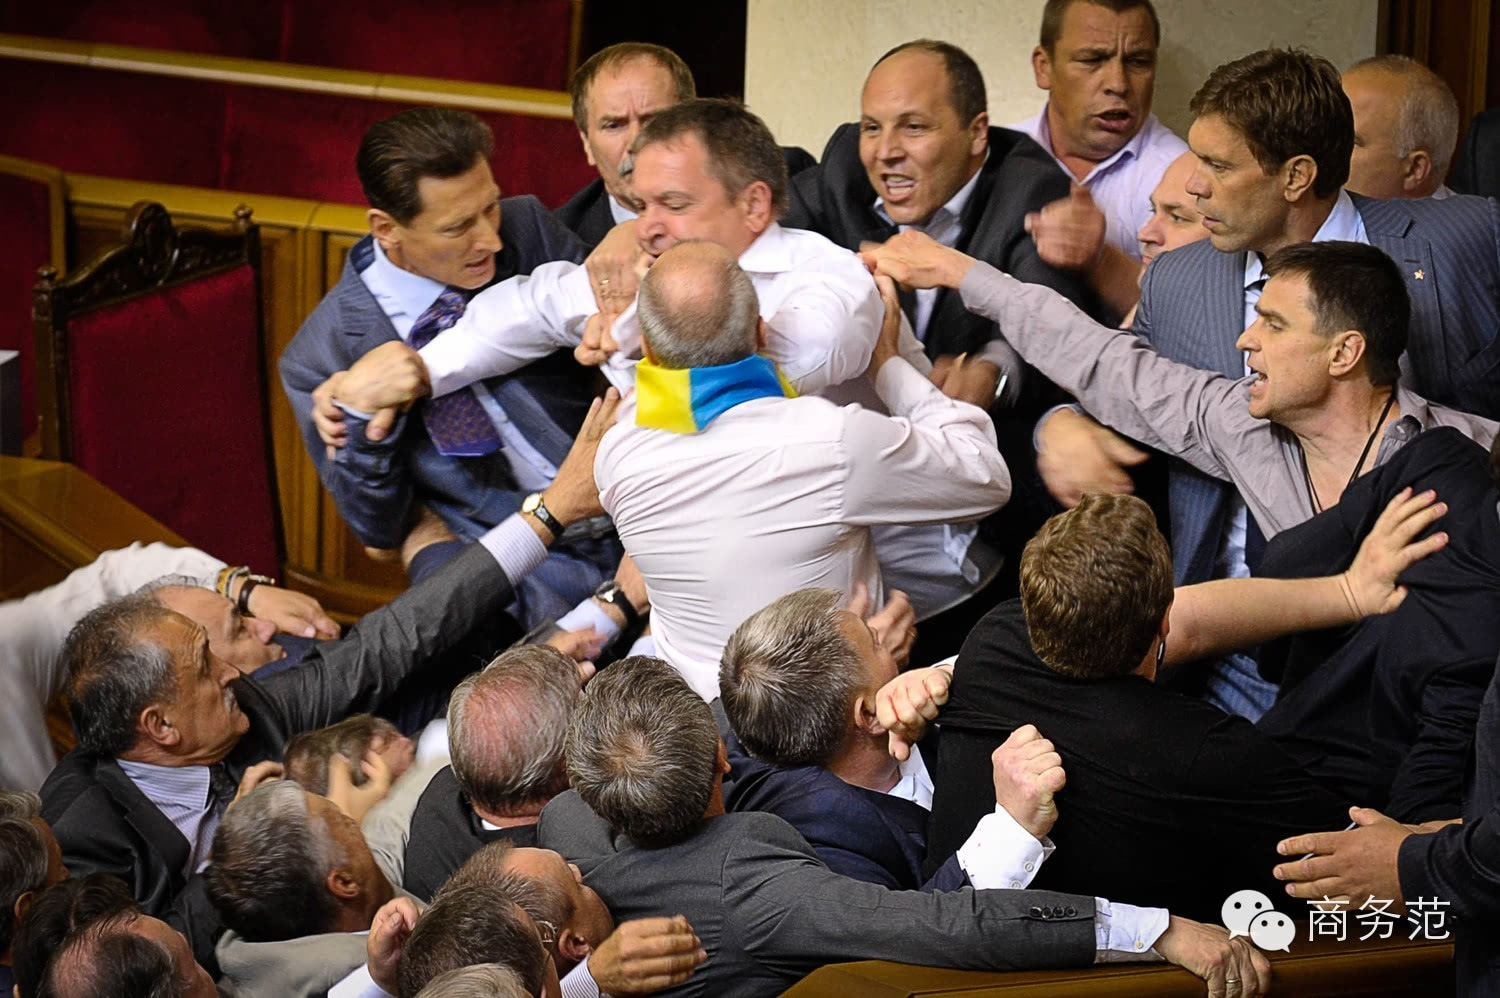 扶好下巴来看乌克兰议会打架神构图